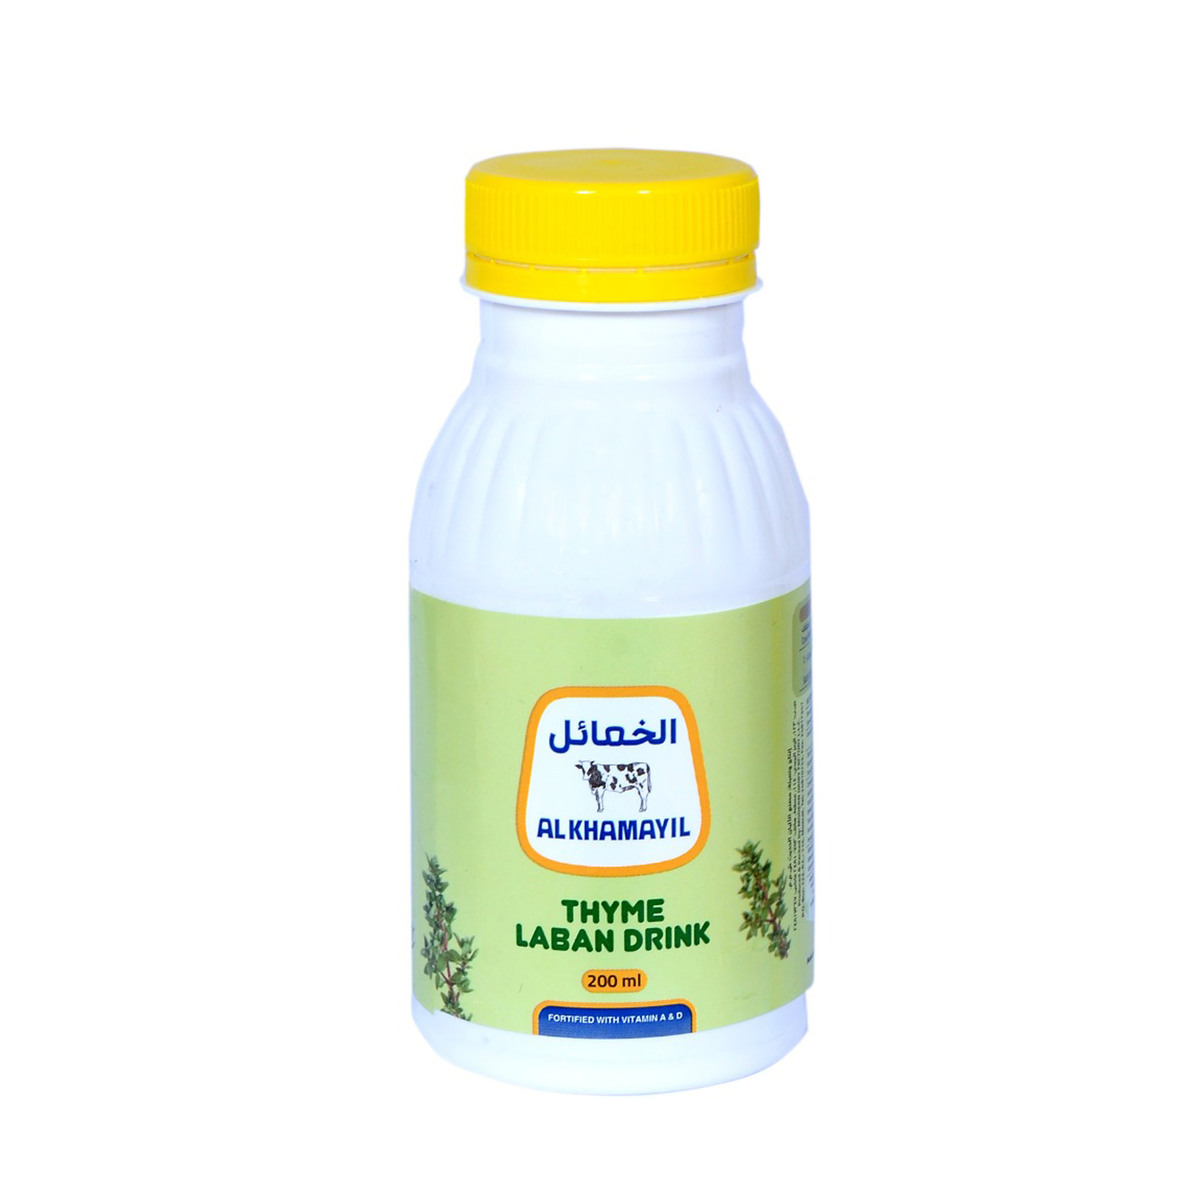 Al Khamayil Thyme Laban Drink 200 ml